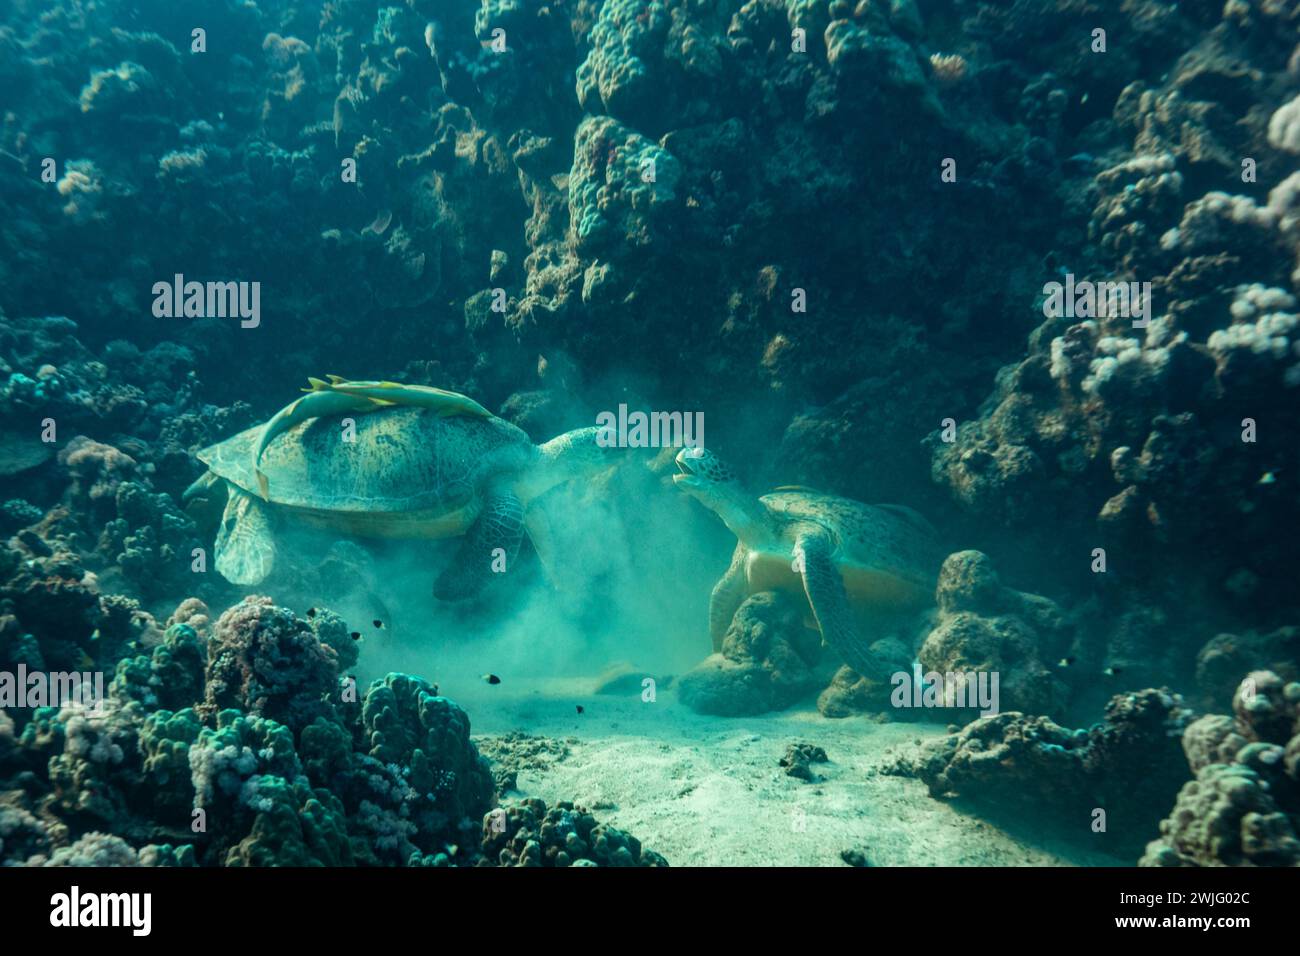 2 tortues de mer verte, Chelonia mydas, se battent pour dormir dans la crevasse d'un récif corallien tropical Banque D'Images